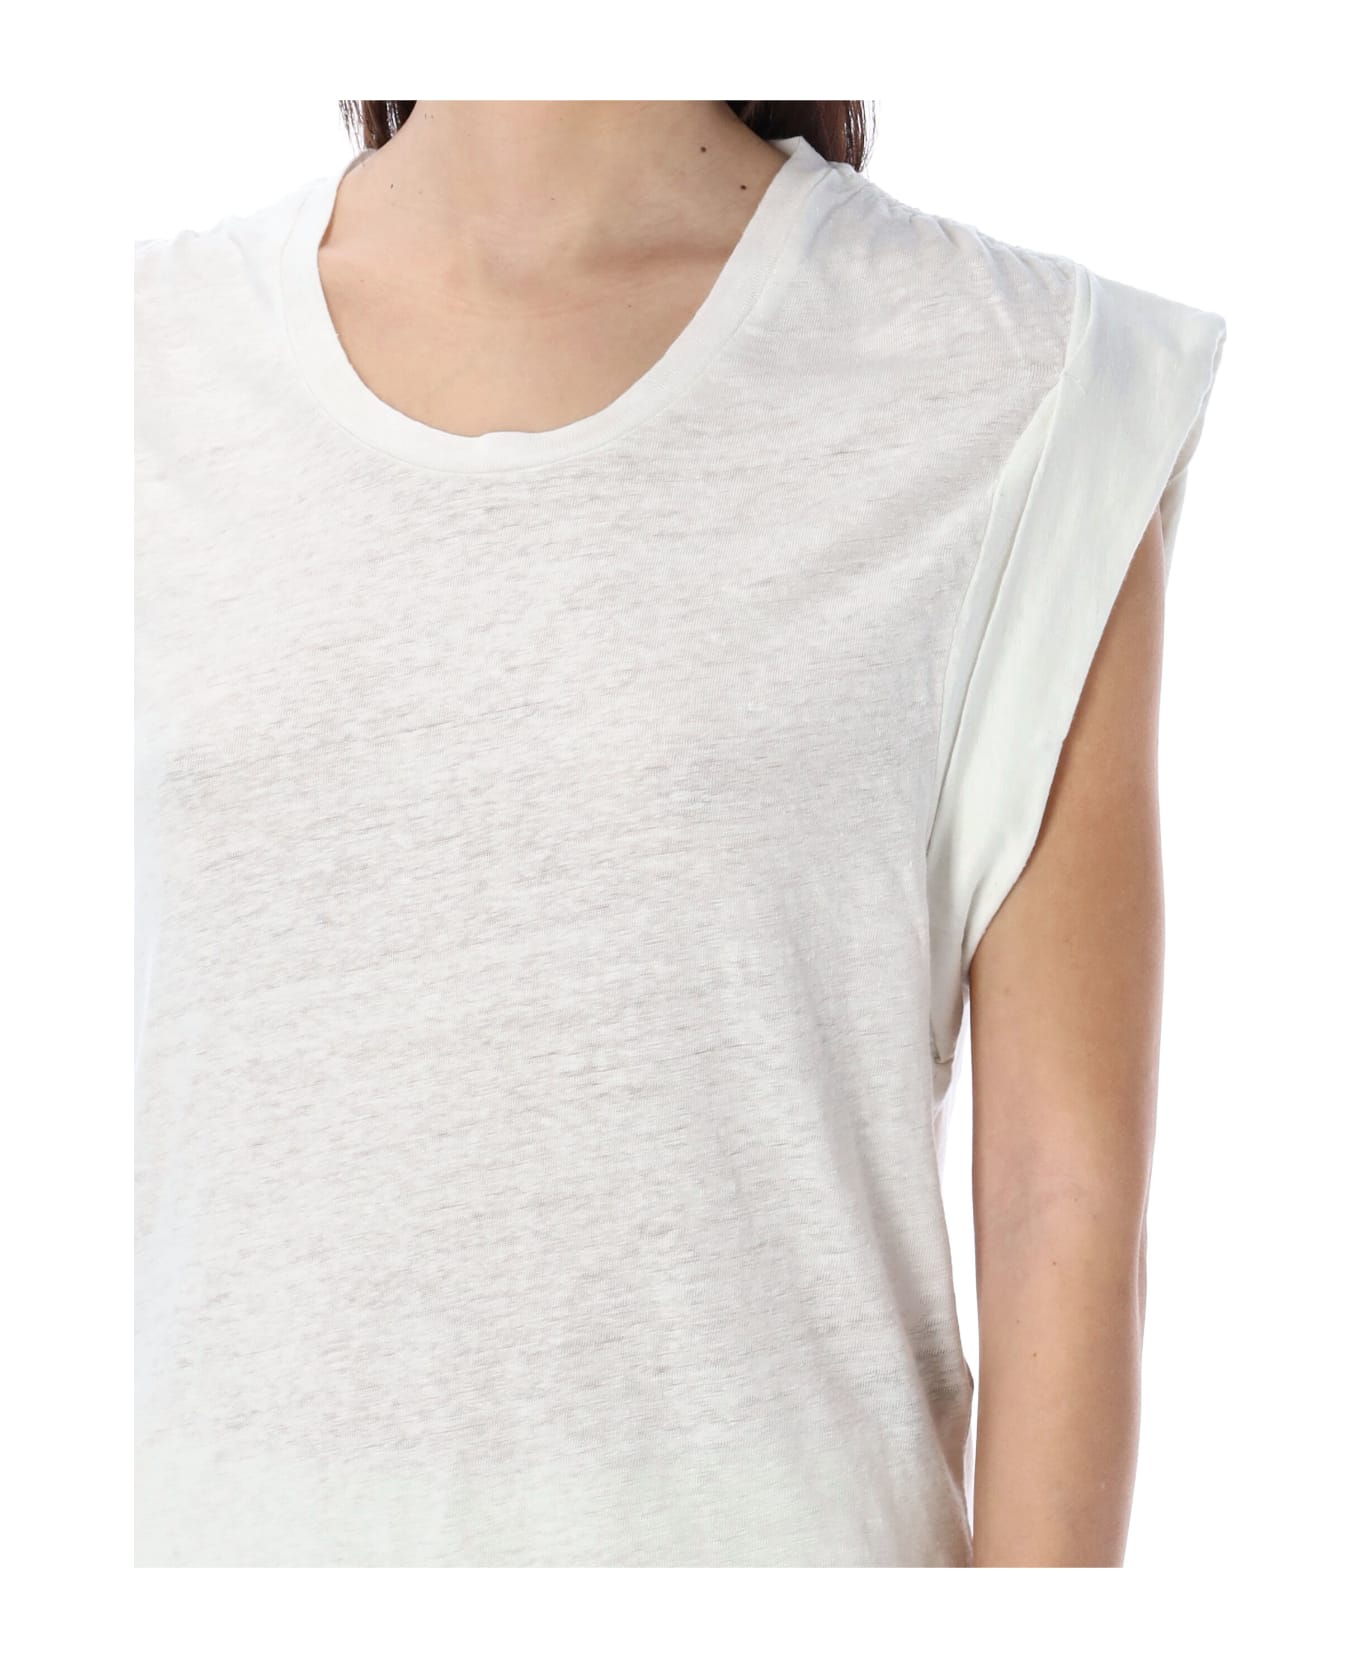 Marant Étoile Kotty T-shirt - WHITE タンクトップ